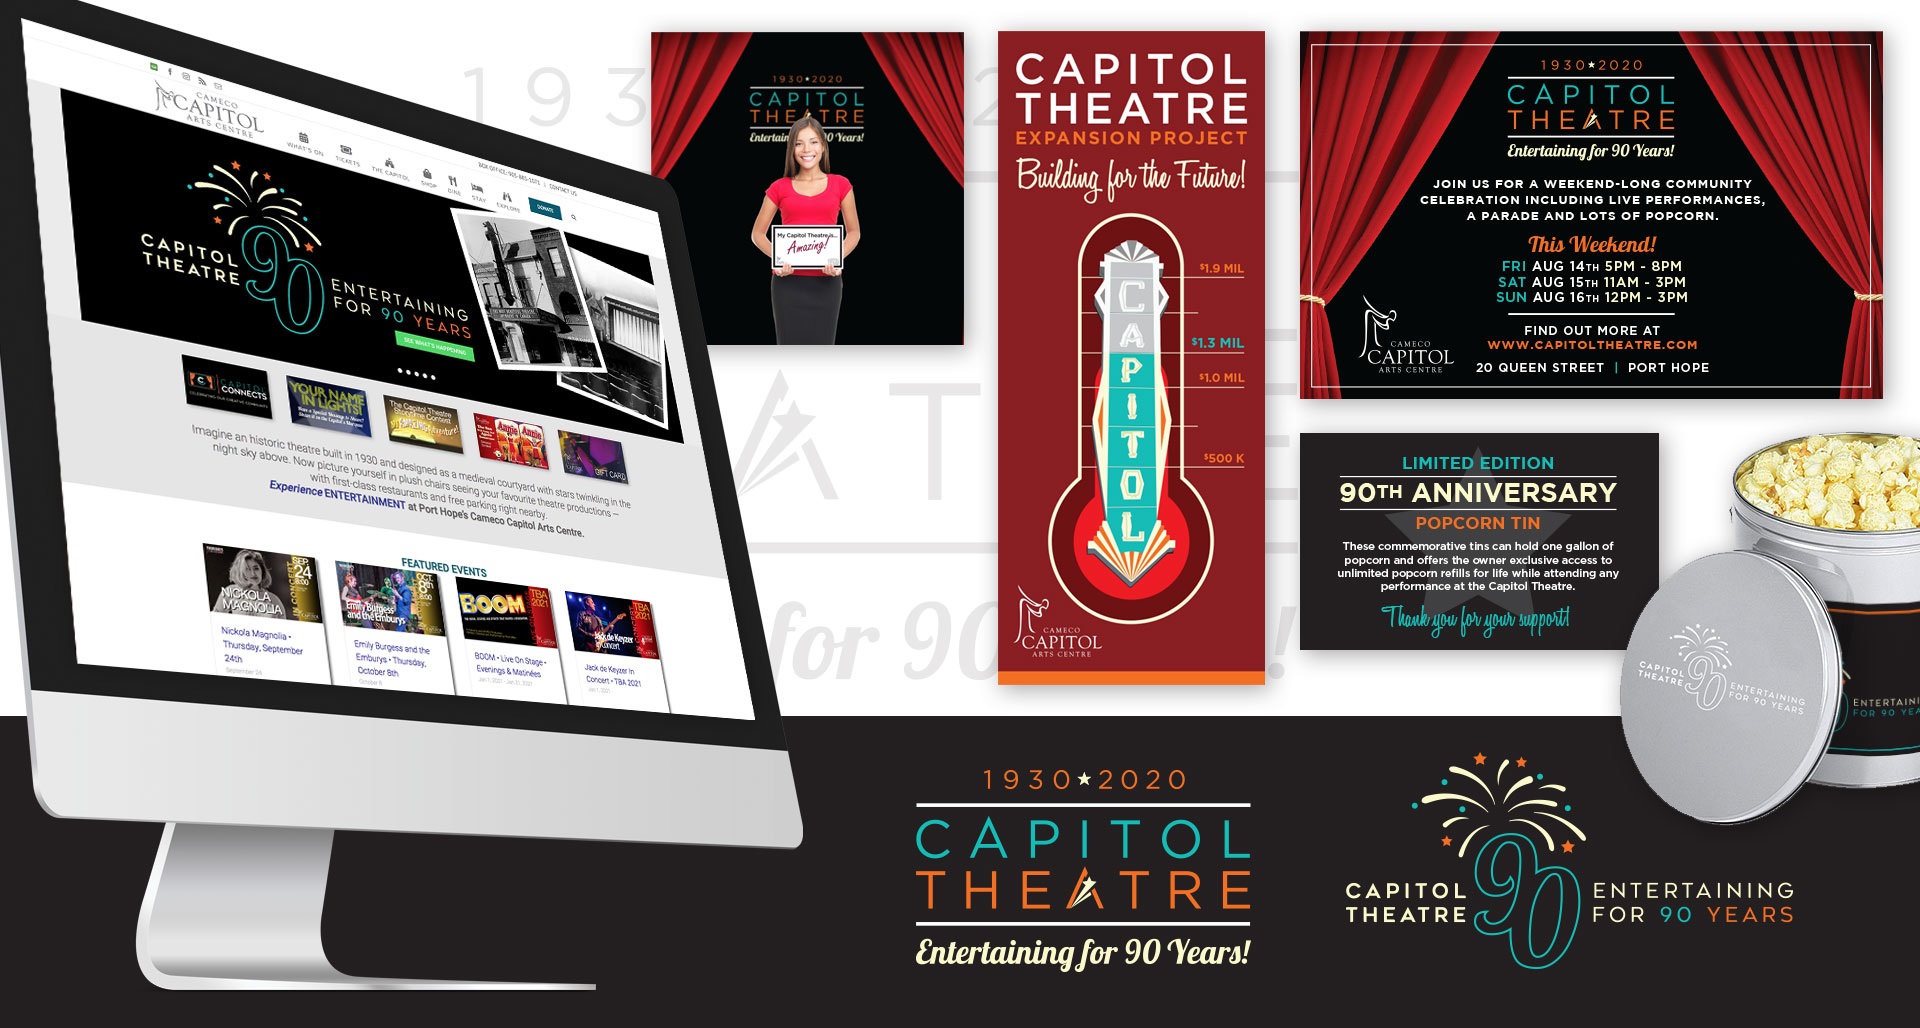 Capitol Theatre Trust